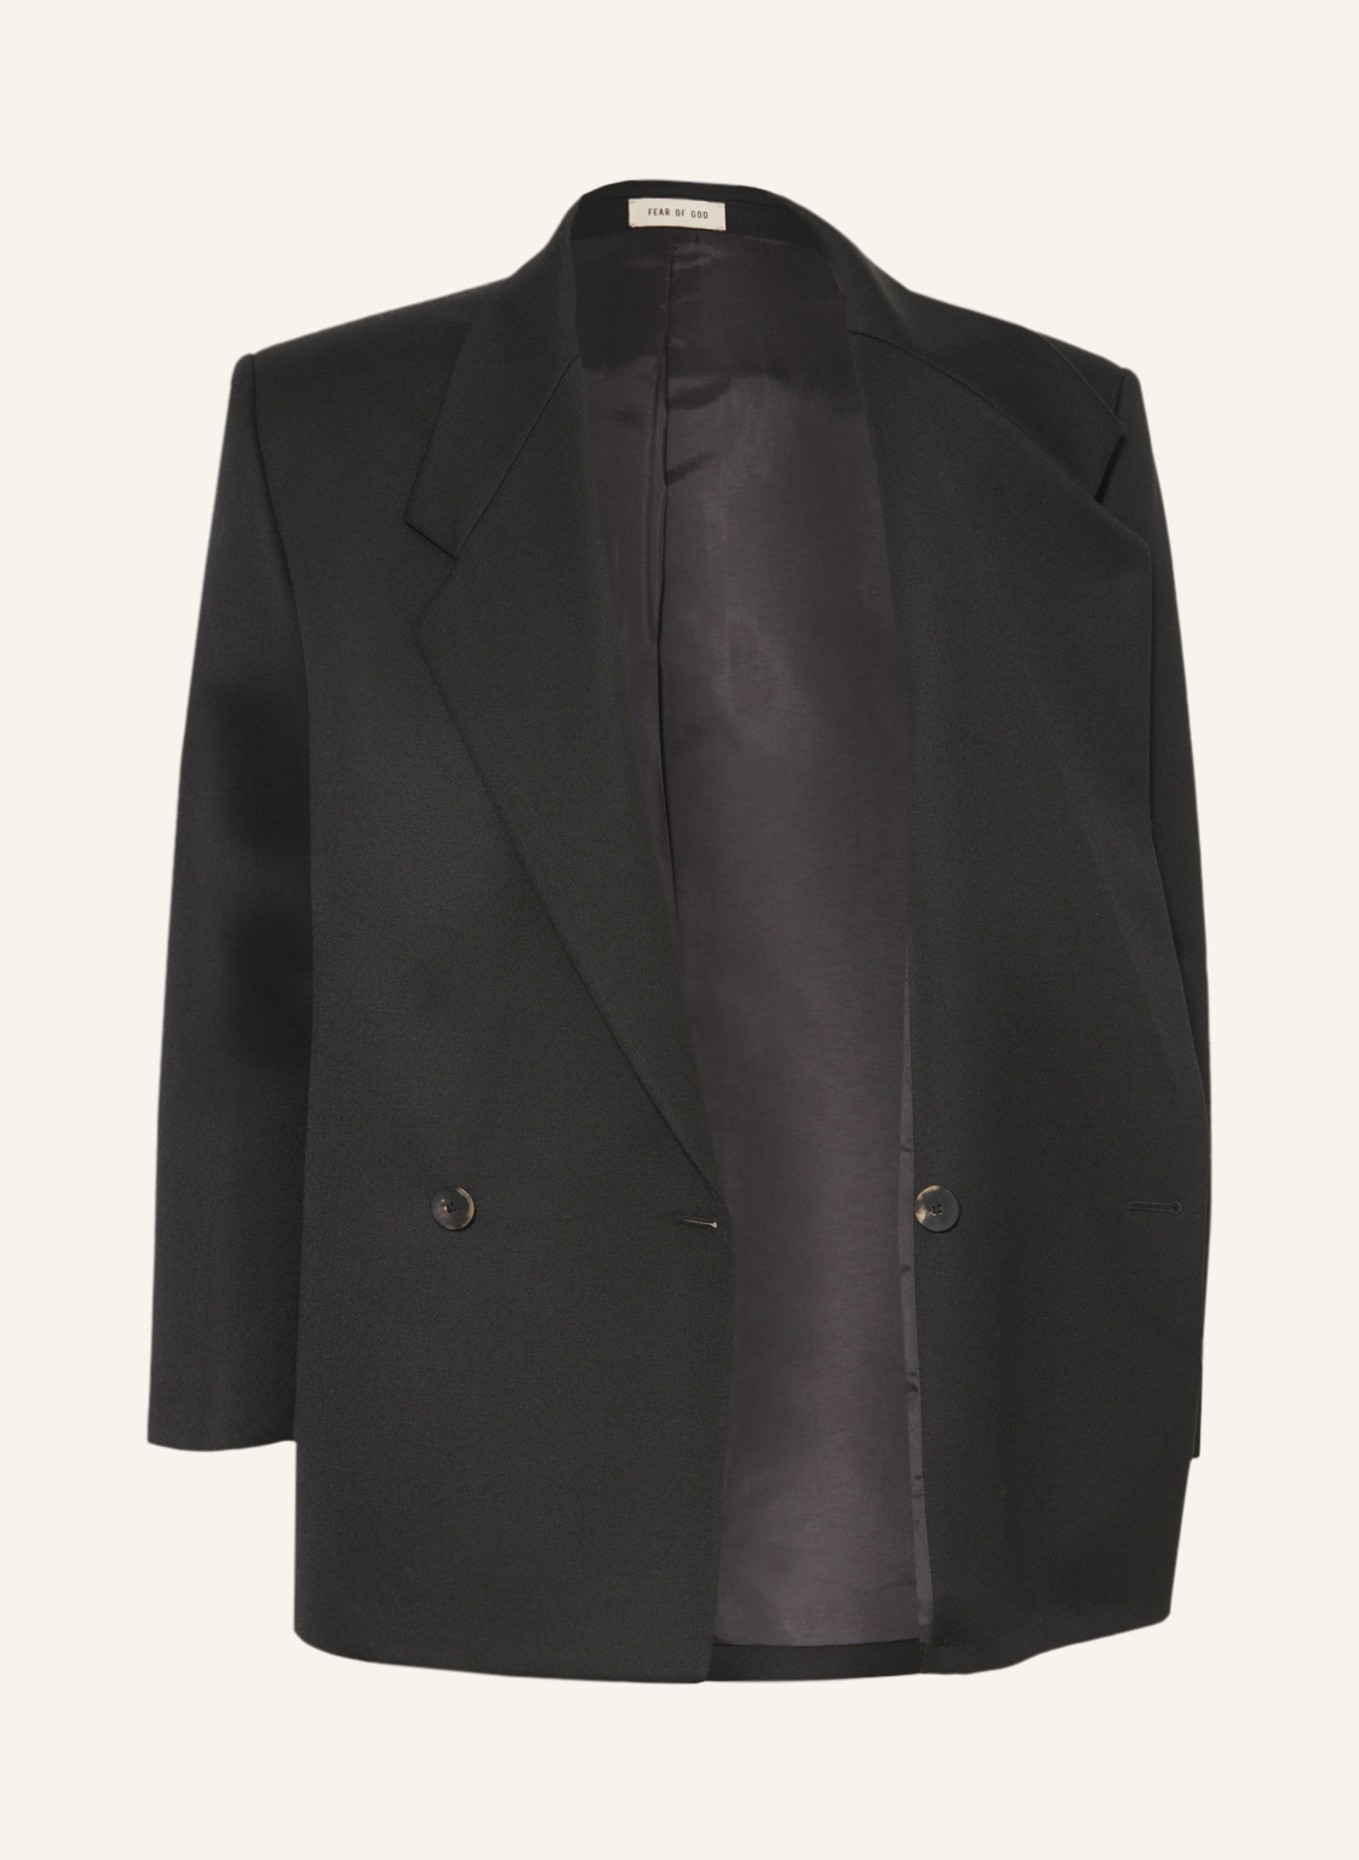 FEAR OF GOD Suit jacket regular fit, Color: BLACK (Image 4)